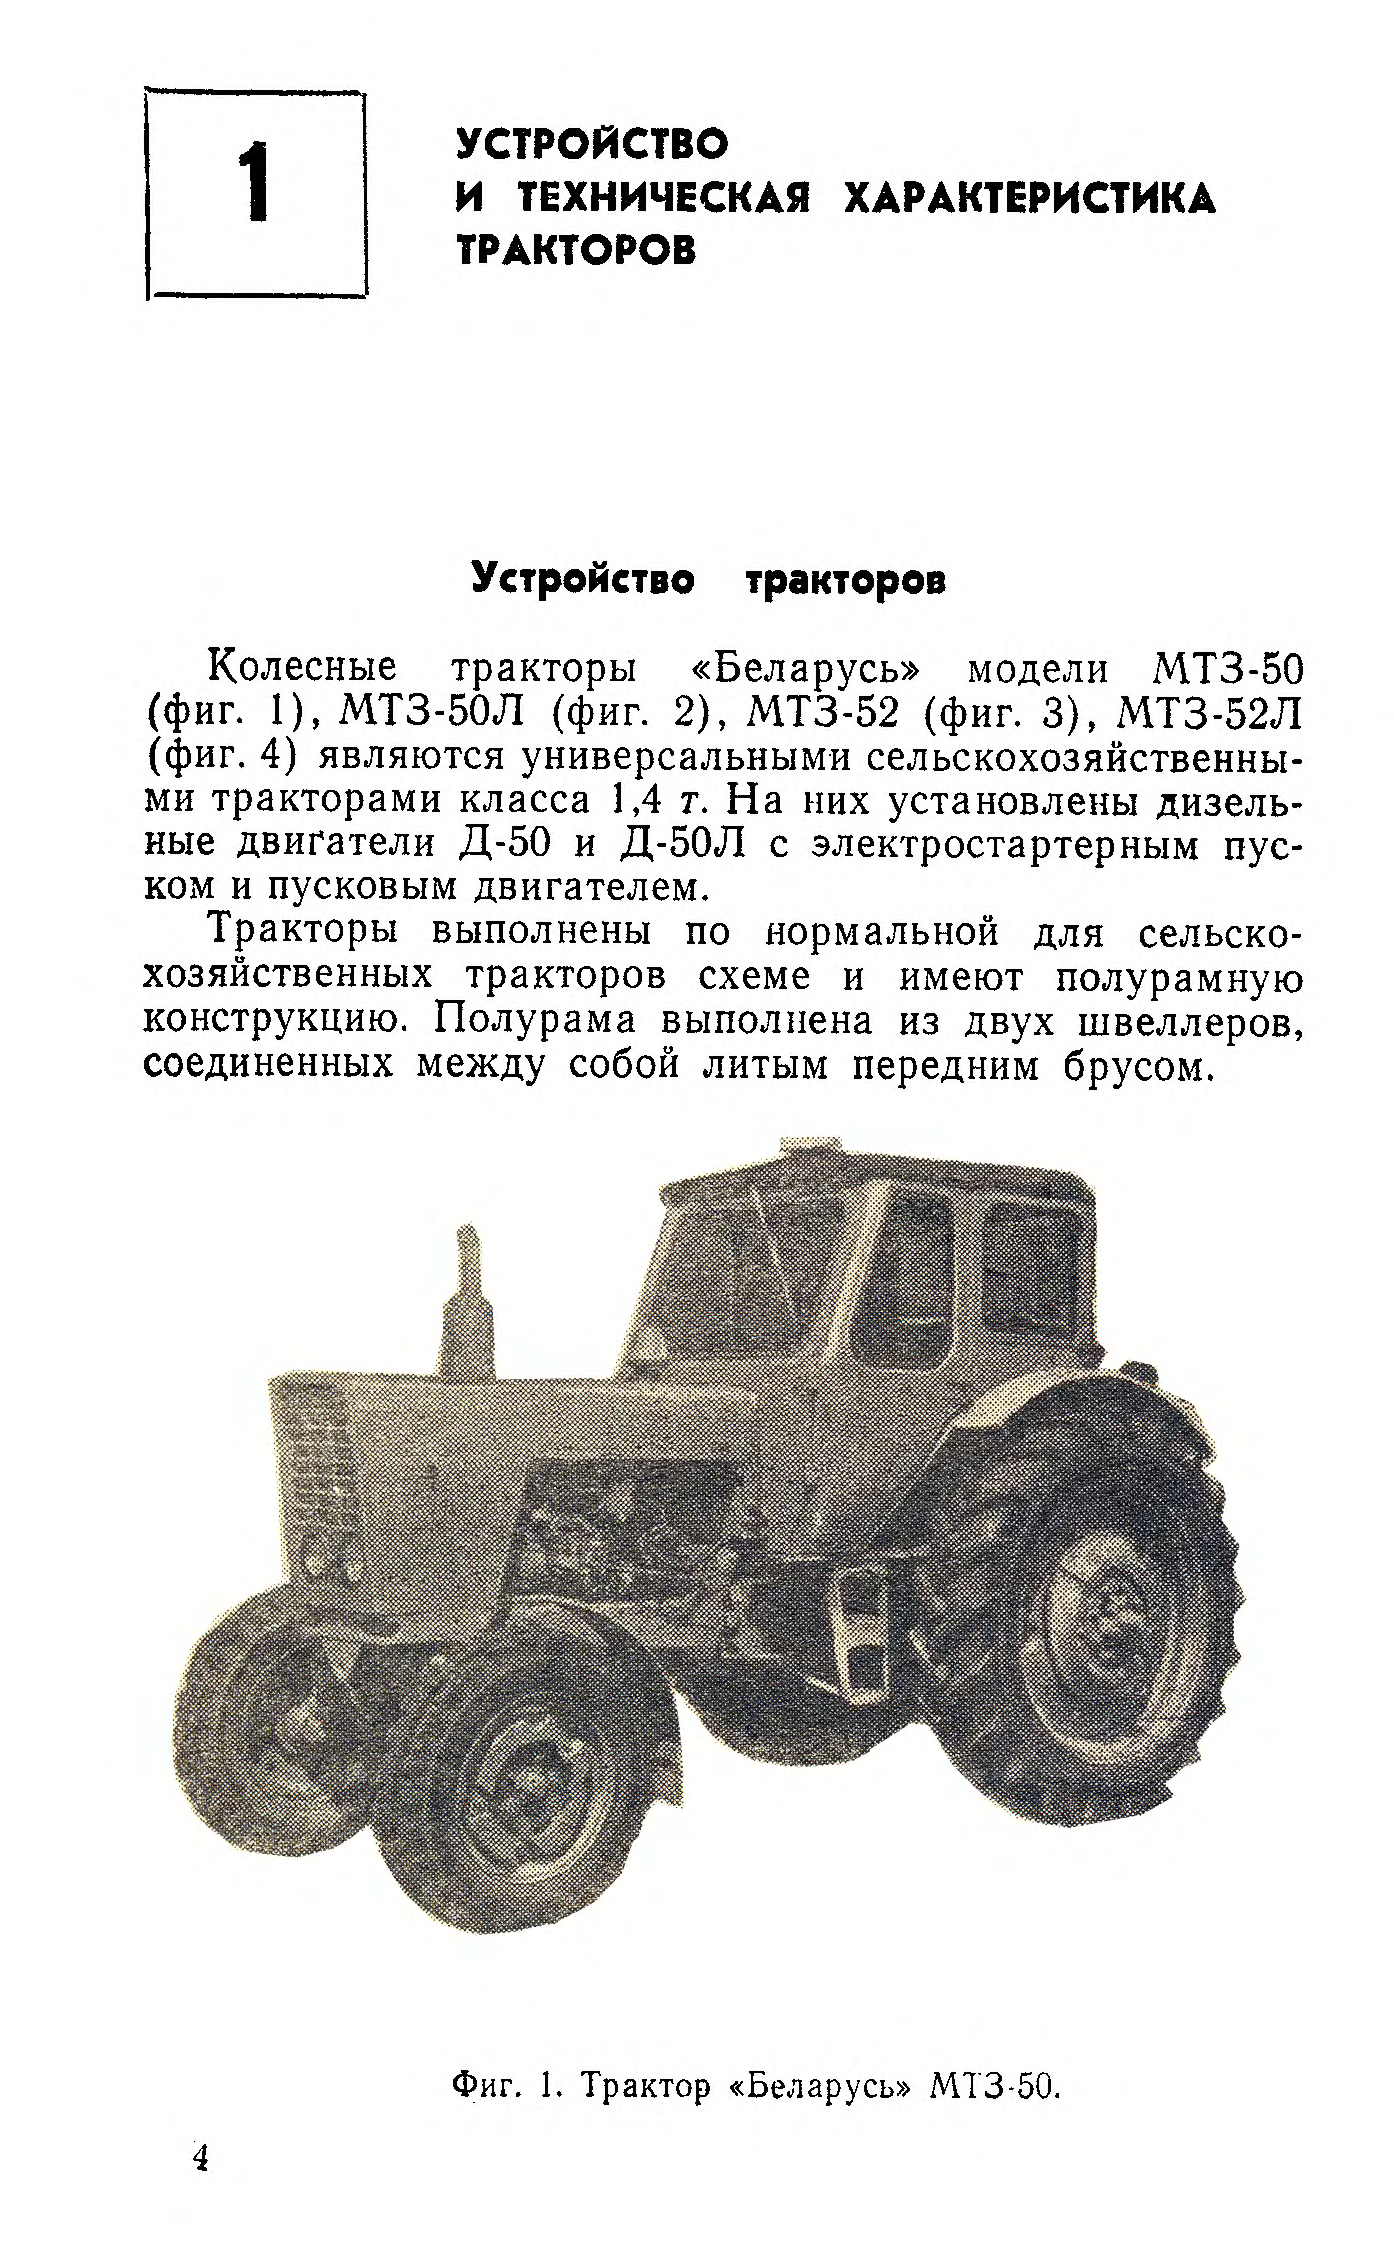 Трактор мтз-50 и мтз-52 - особенности и преимущества моделей - mtz-80.ru